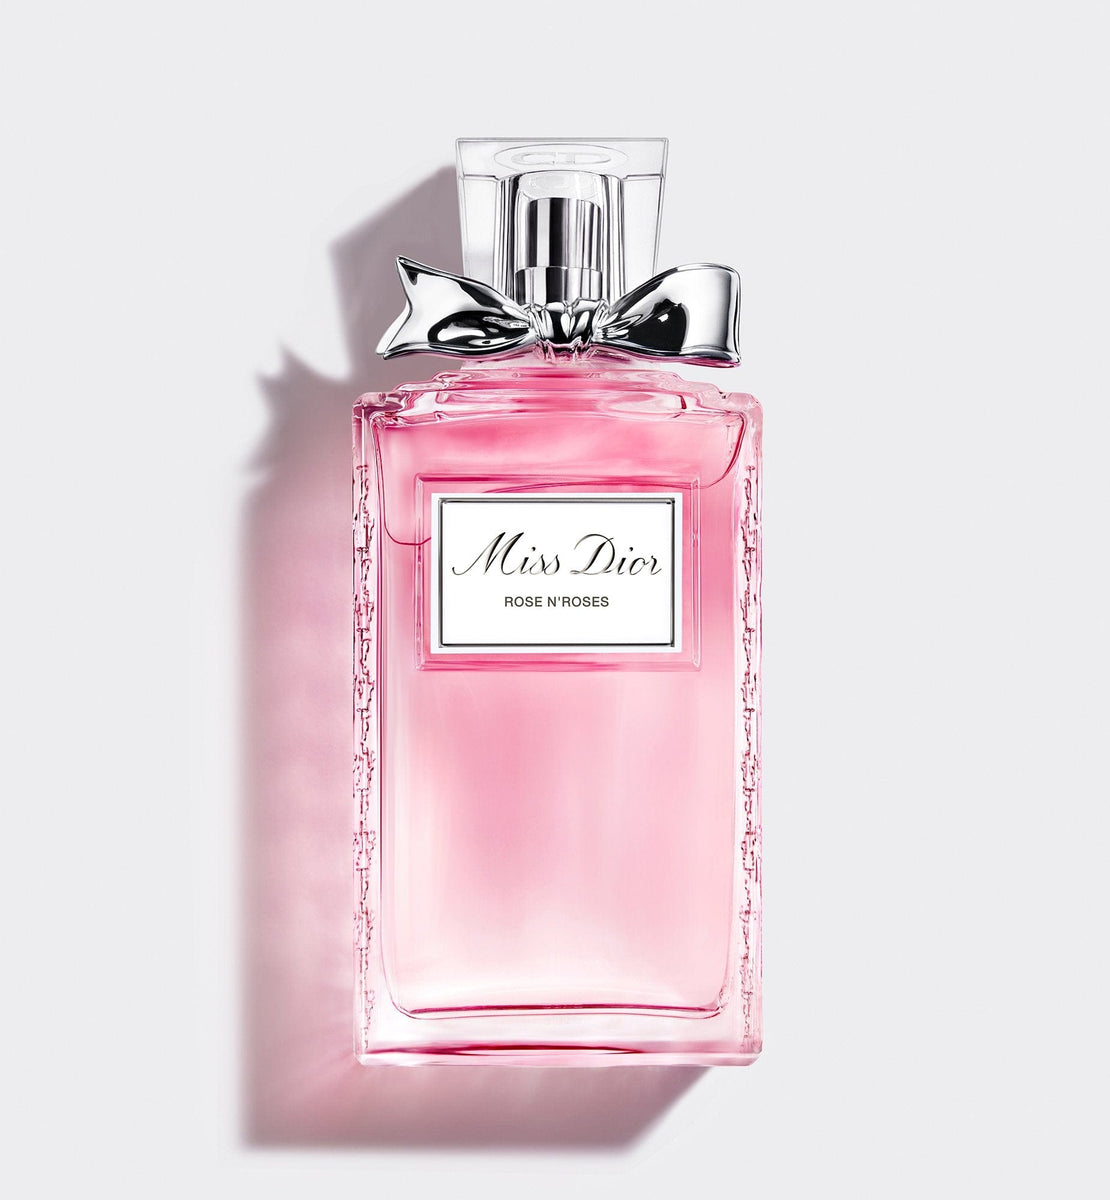 MISS DIOR ROSE N'ROSES EAU DE TOILETTE – Dior Beauty KSA